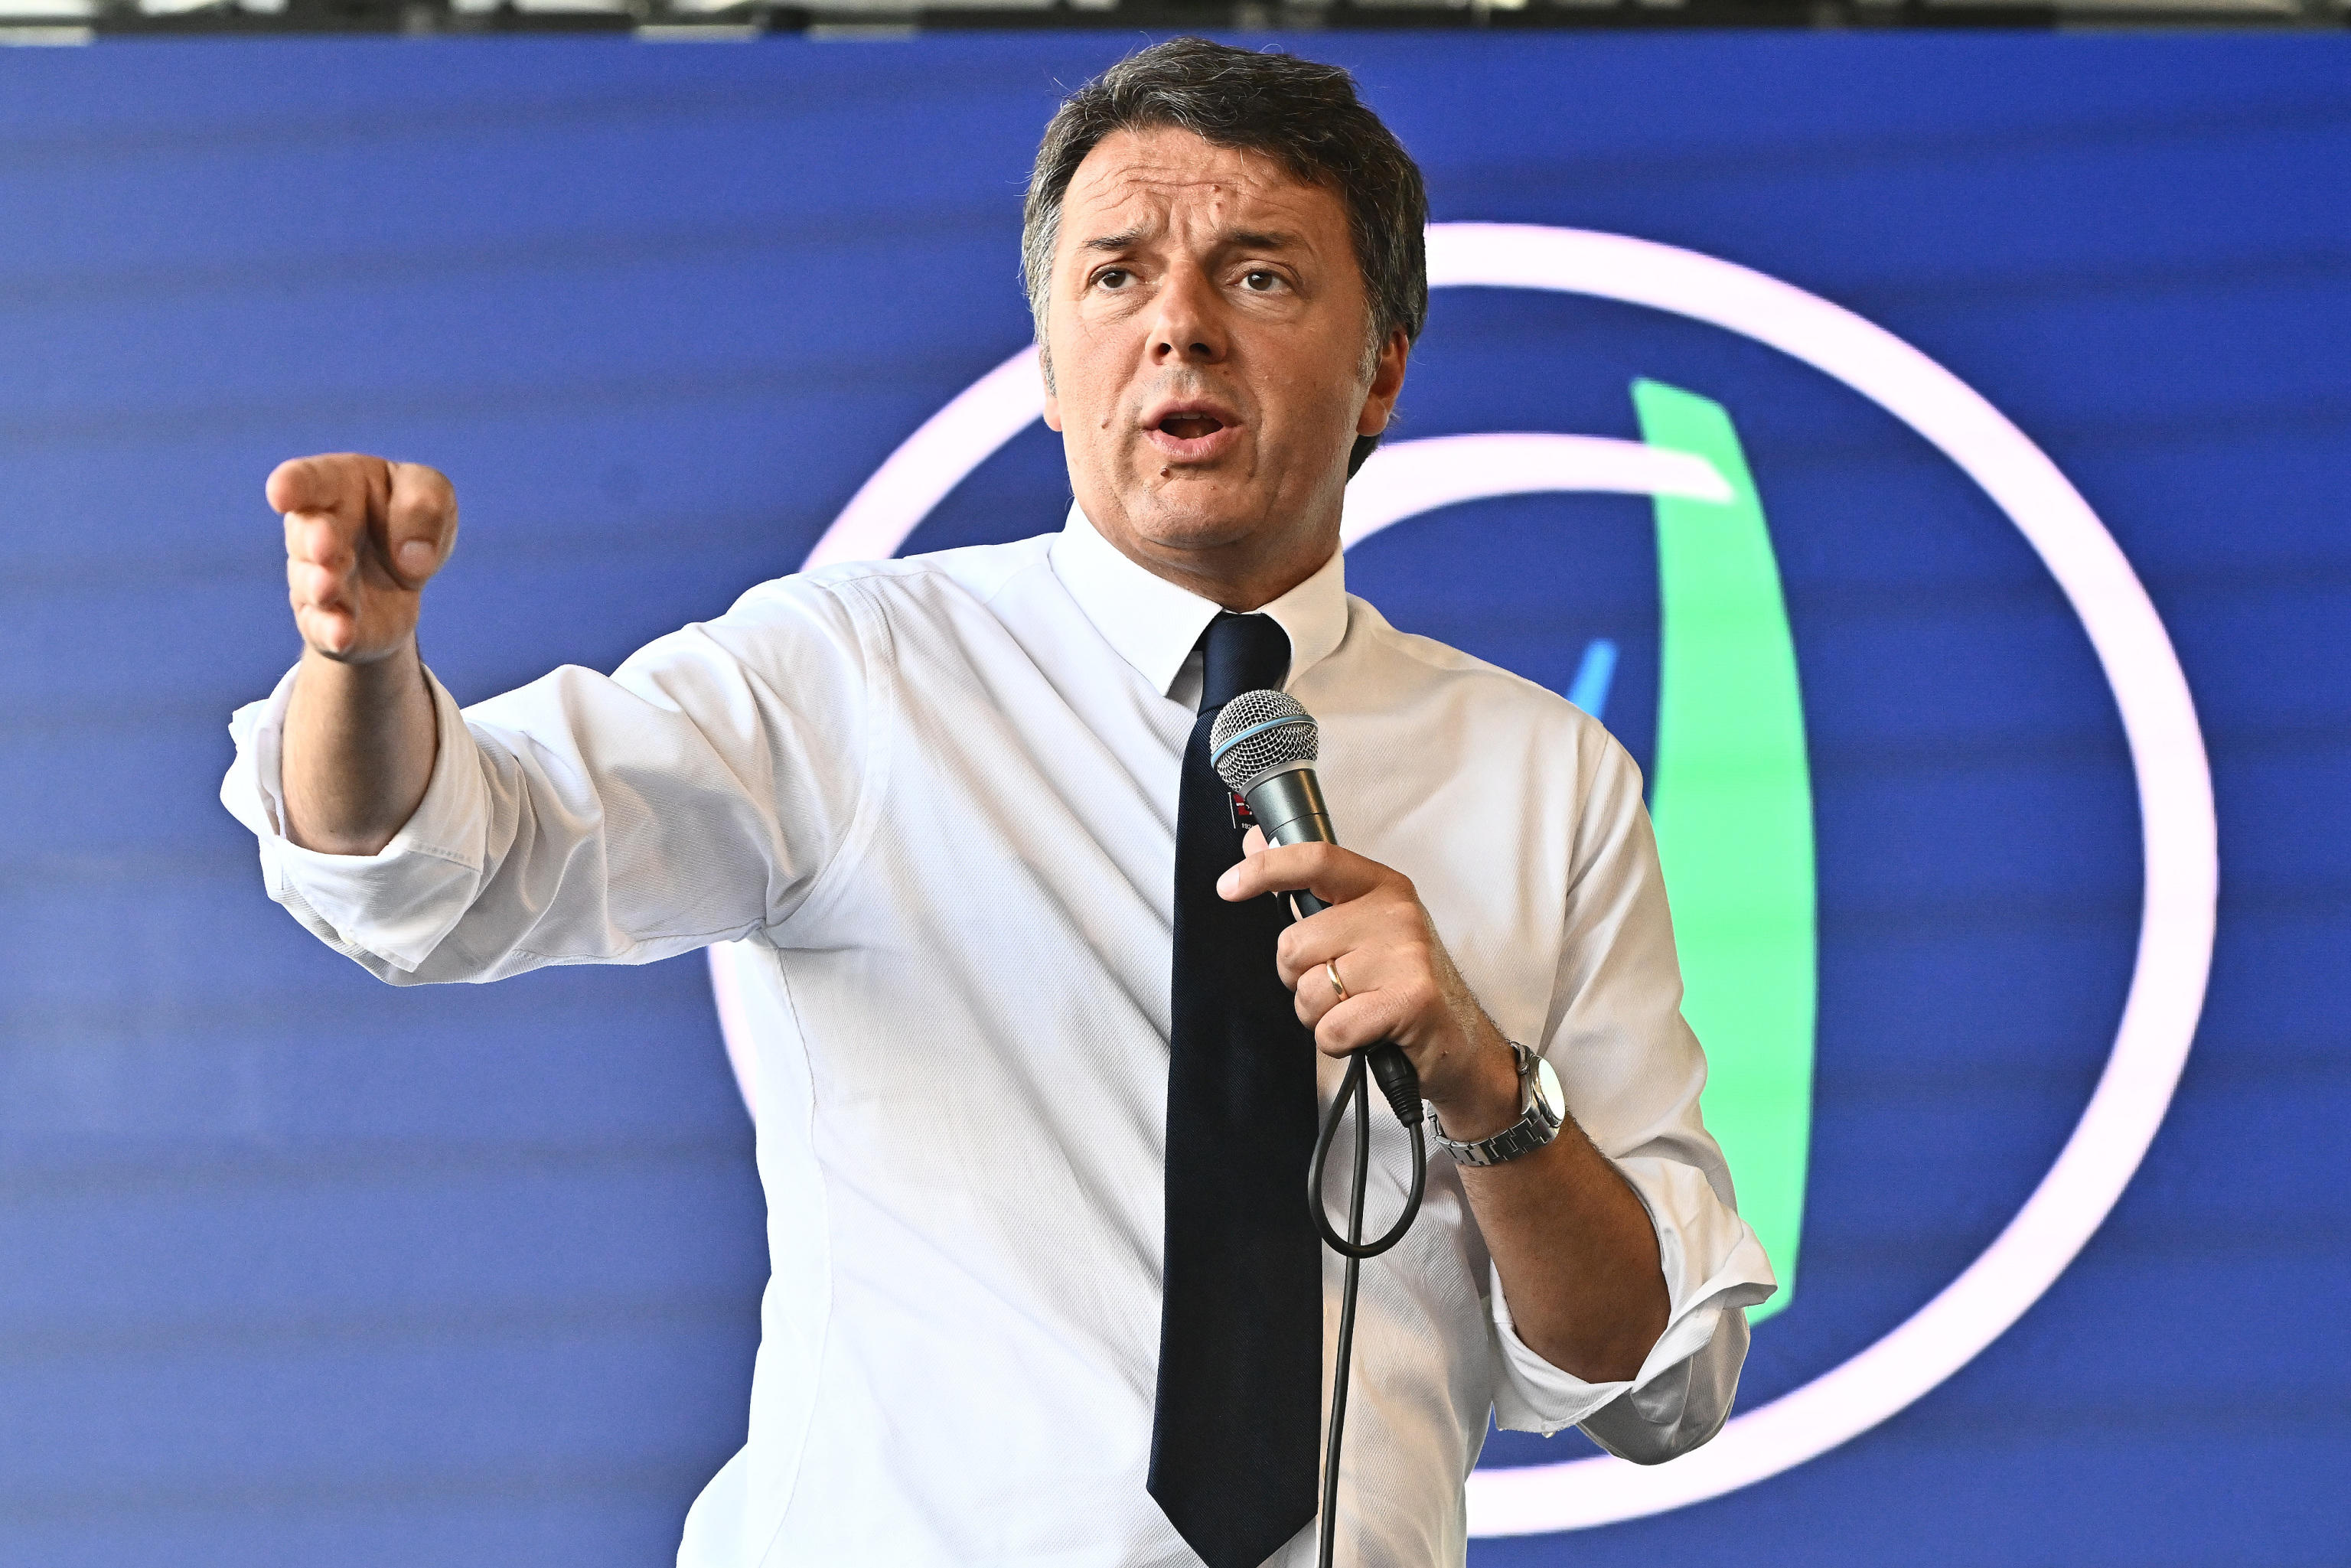 Il mea culpa di Renzi: «Arrivare a Chigi con un passaggio di palazzo fu un errore»